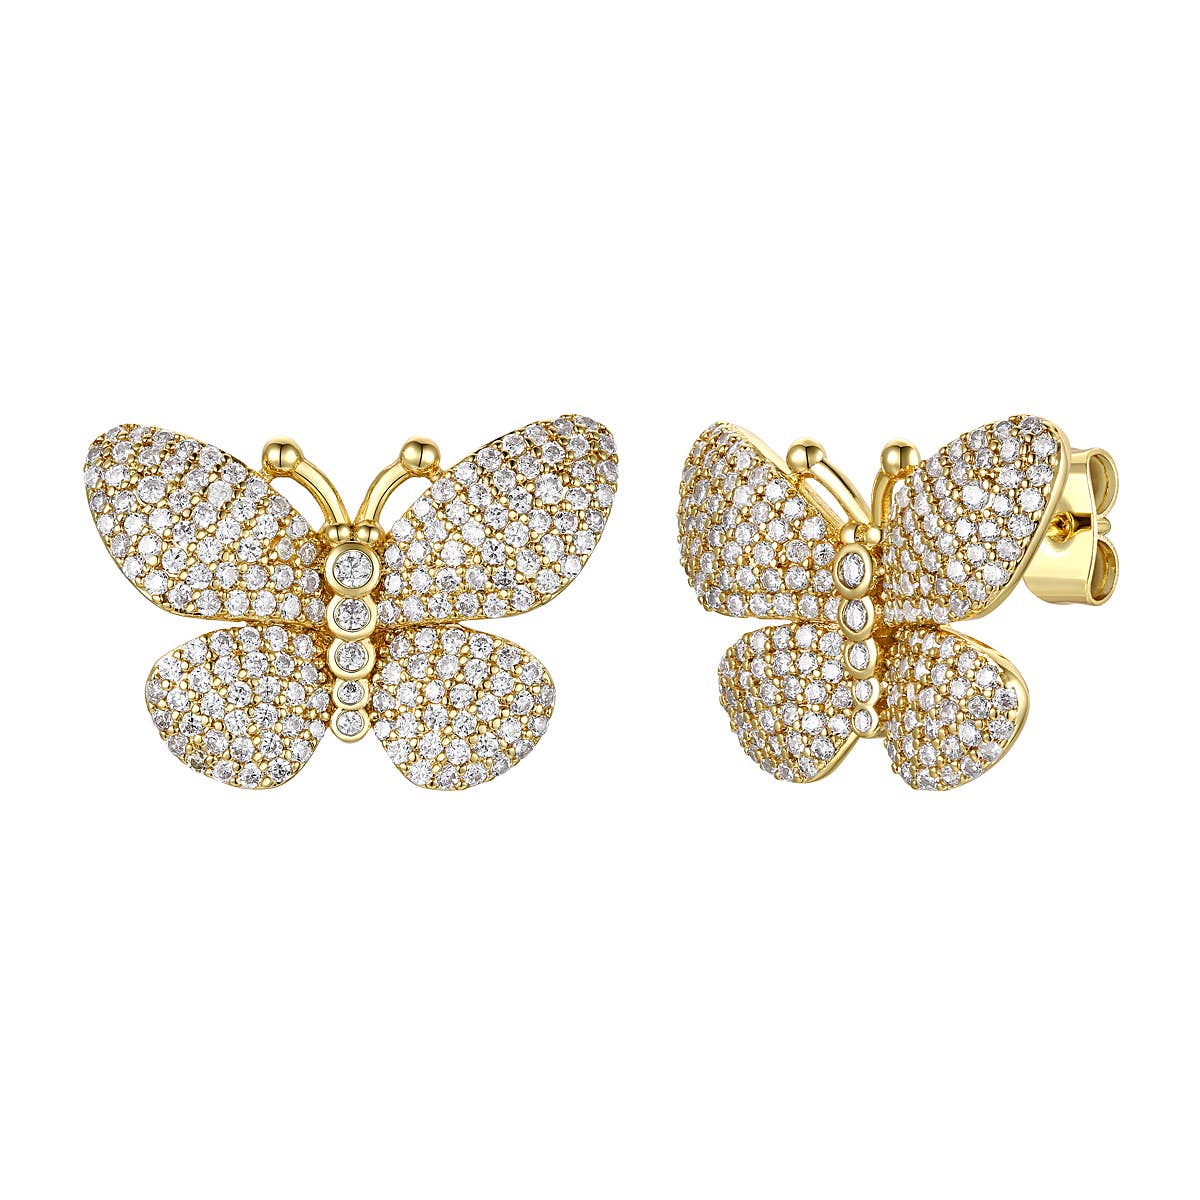 French Butterfly Earrings